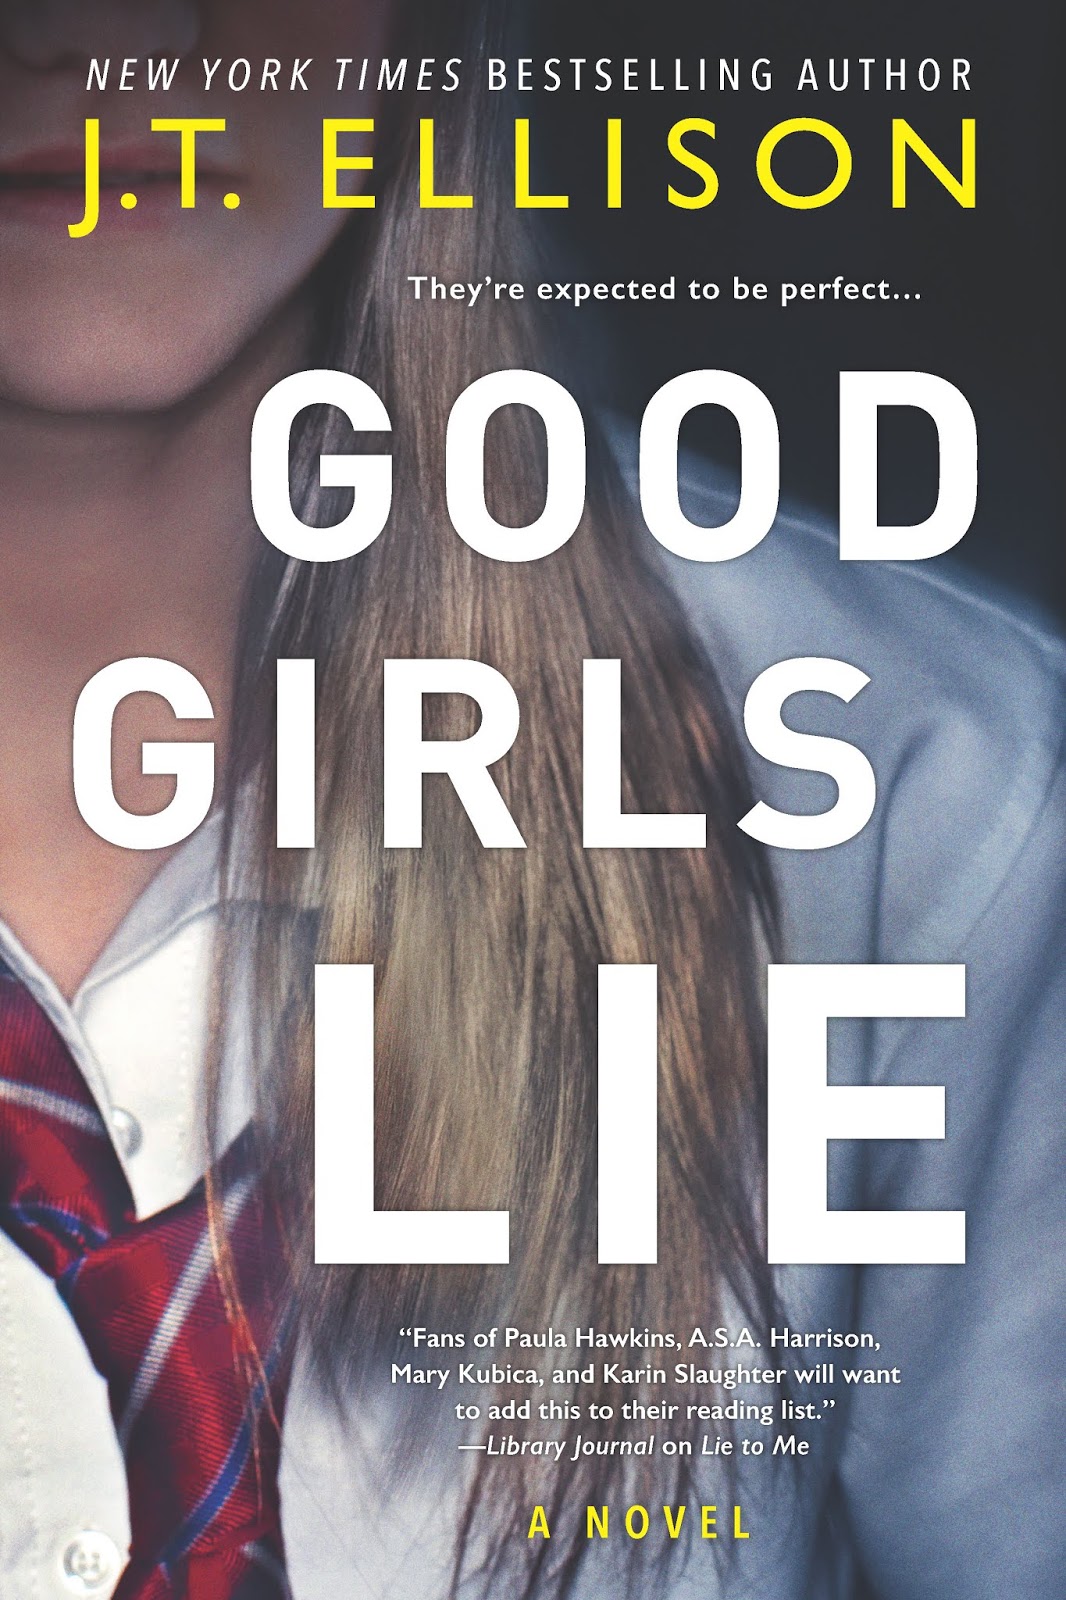 Blog Tour & Review: Good Girls Lie by J.T. Ellison